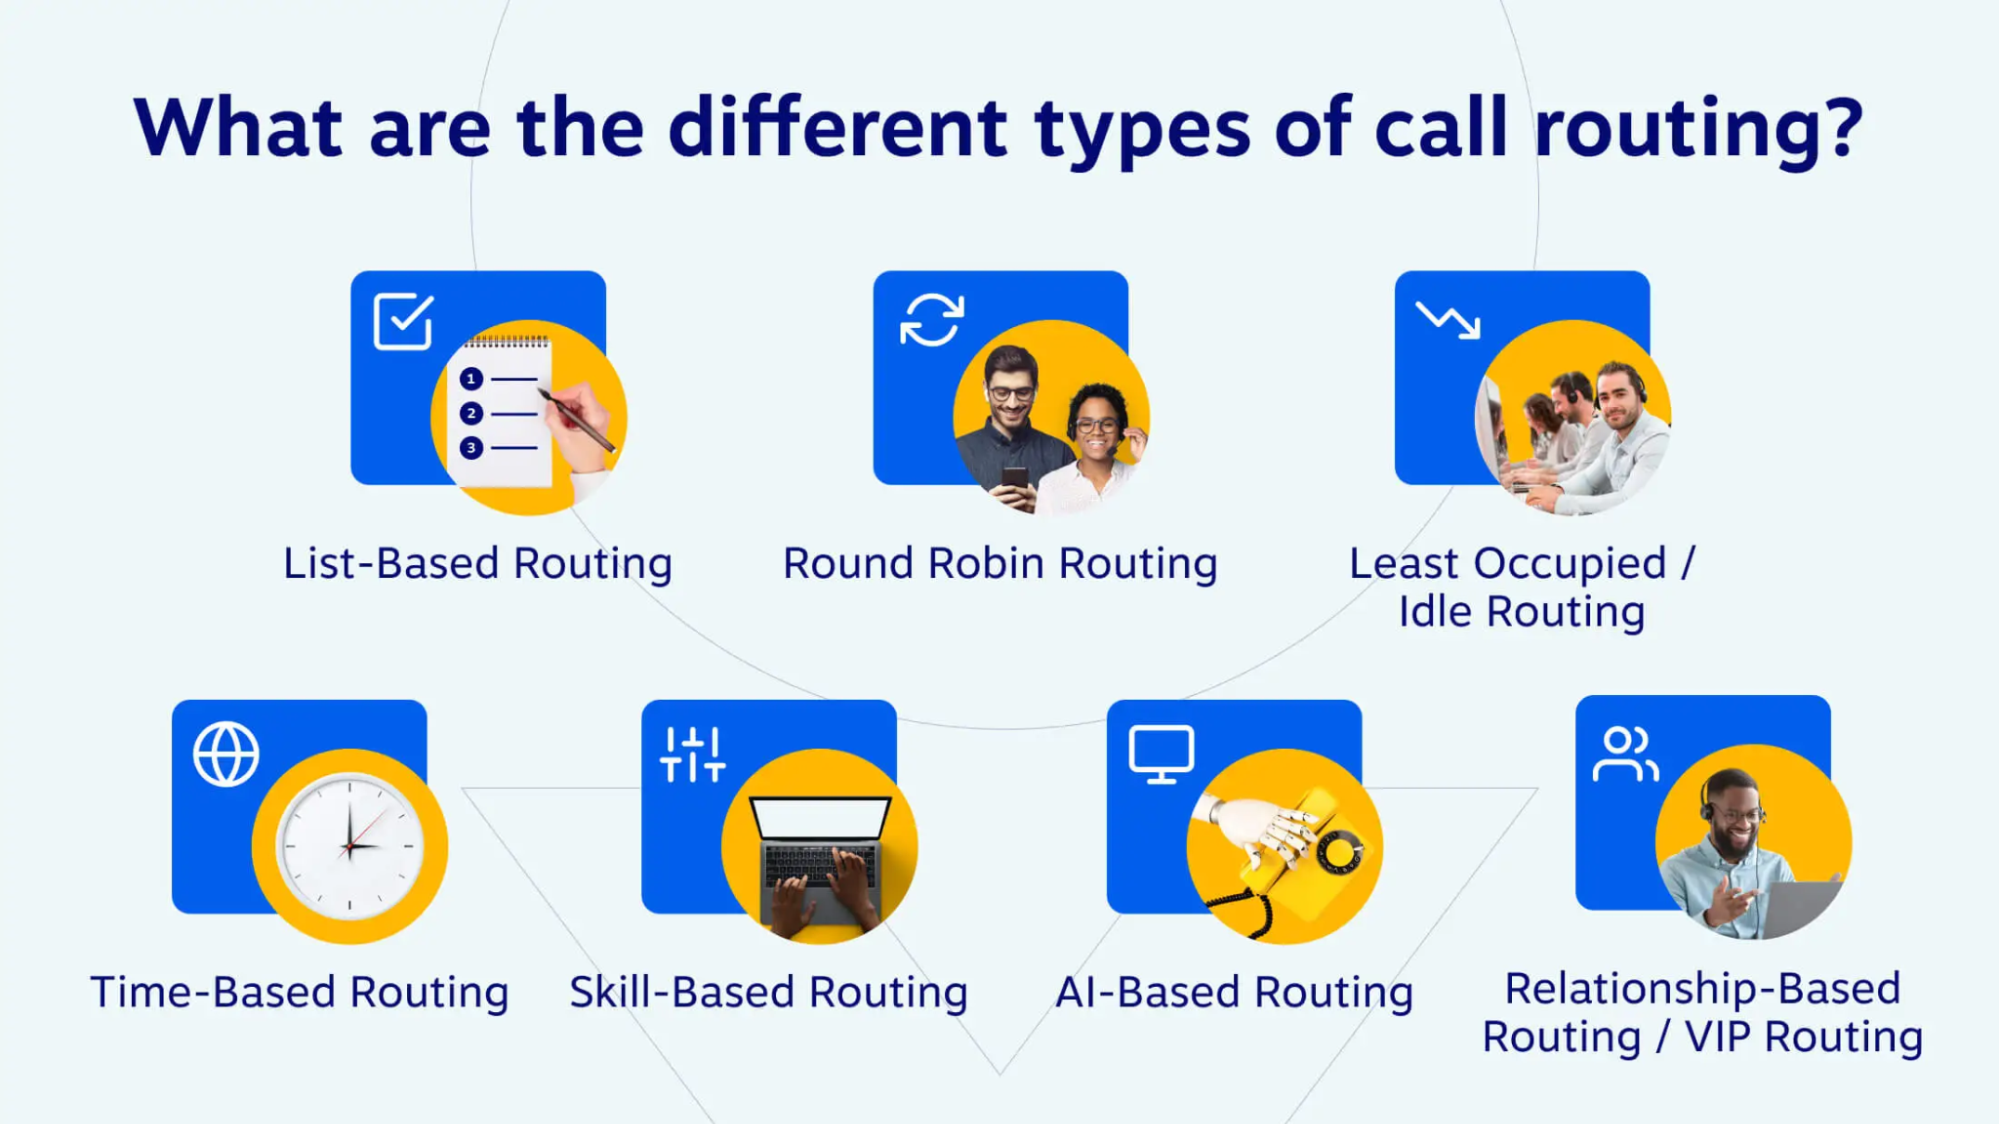 أنواع مختلفة من توجيه المكالمات